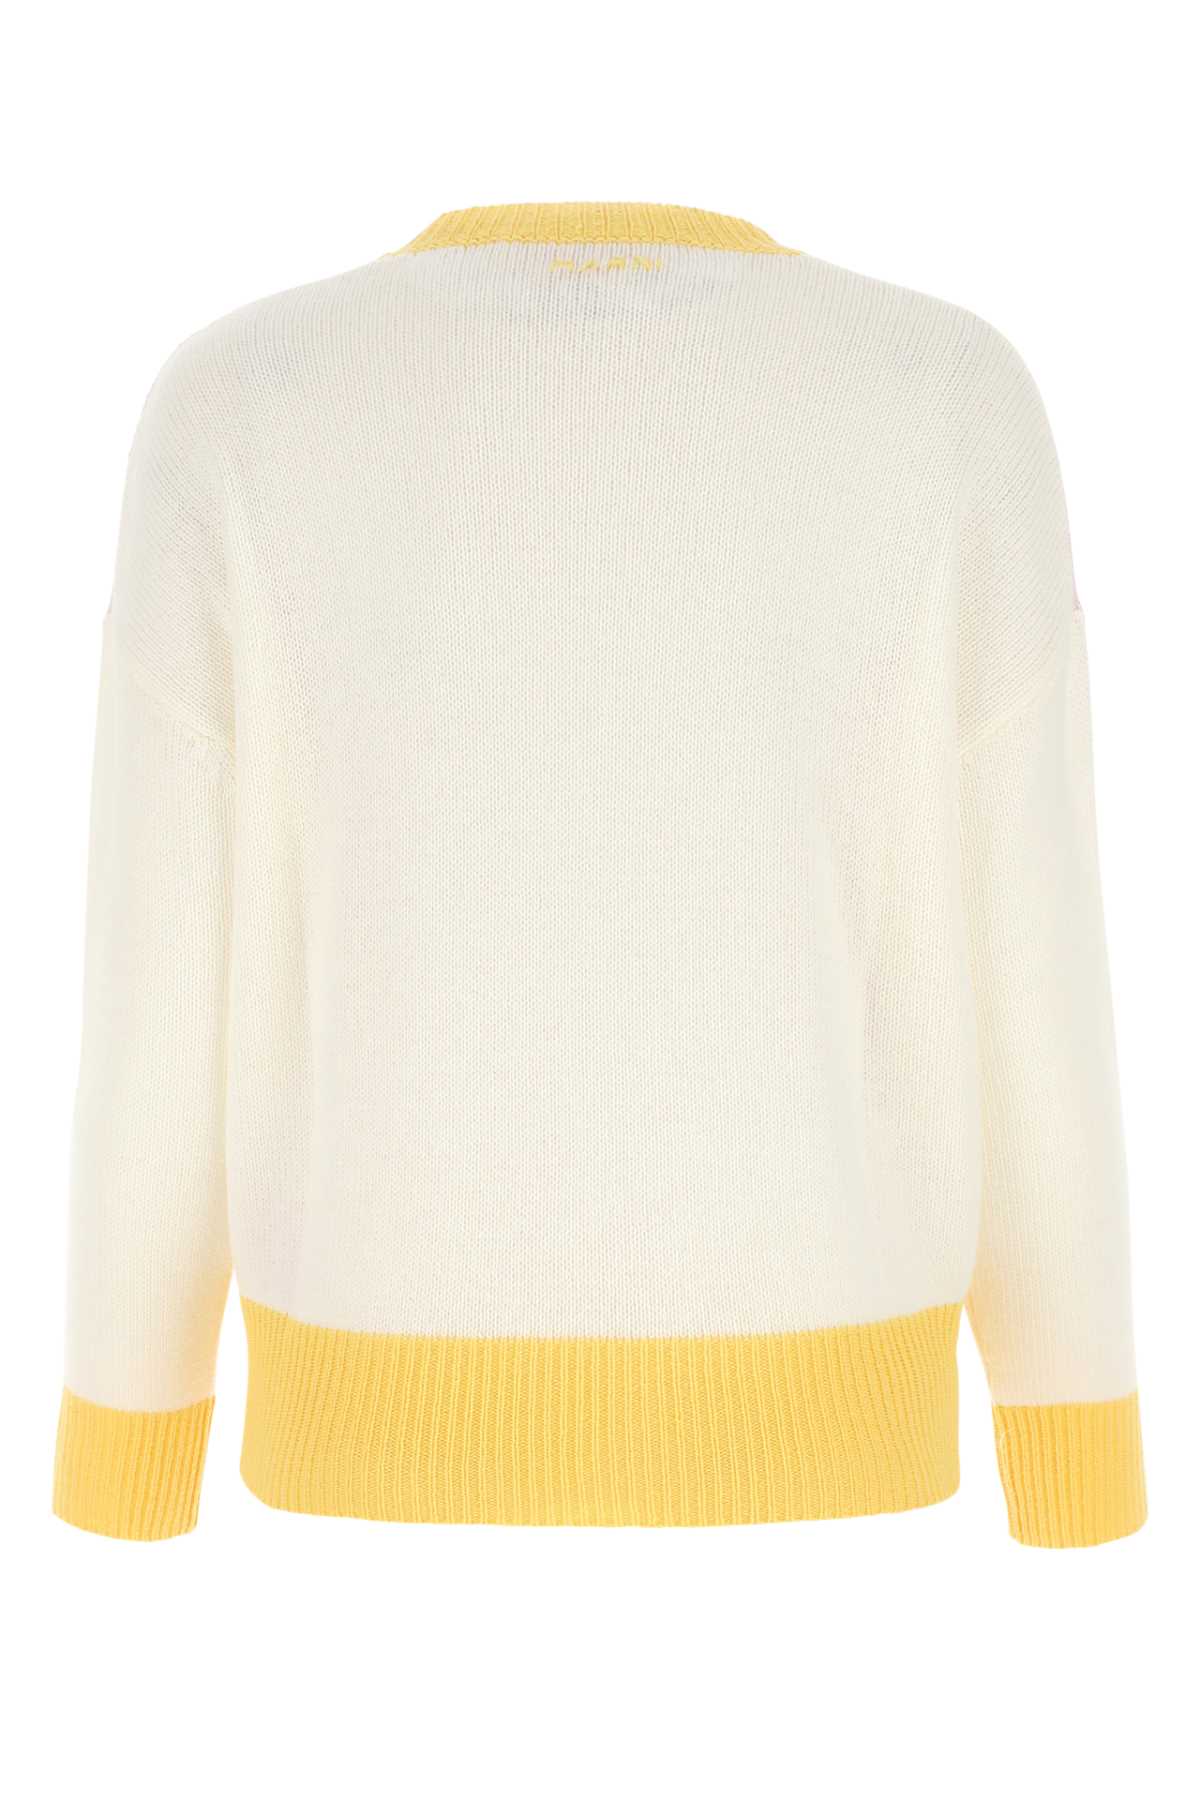 Marni Multicolor Cashmere Oversize Sweater In Mxc17